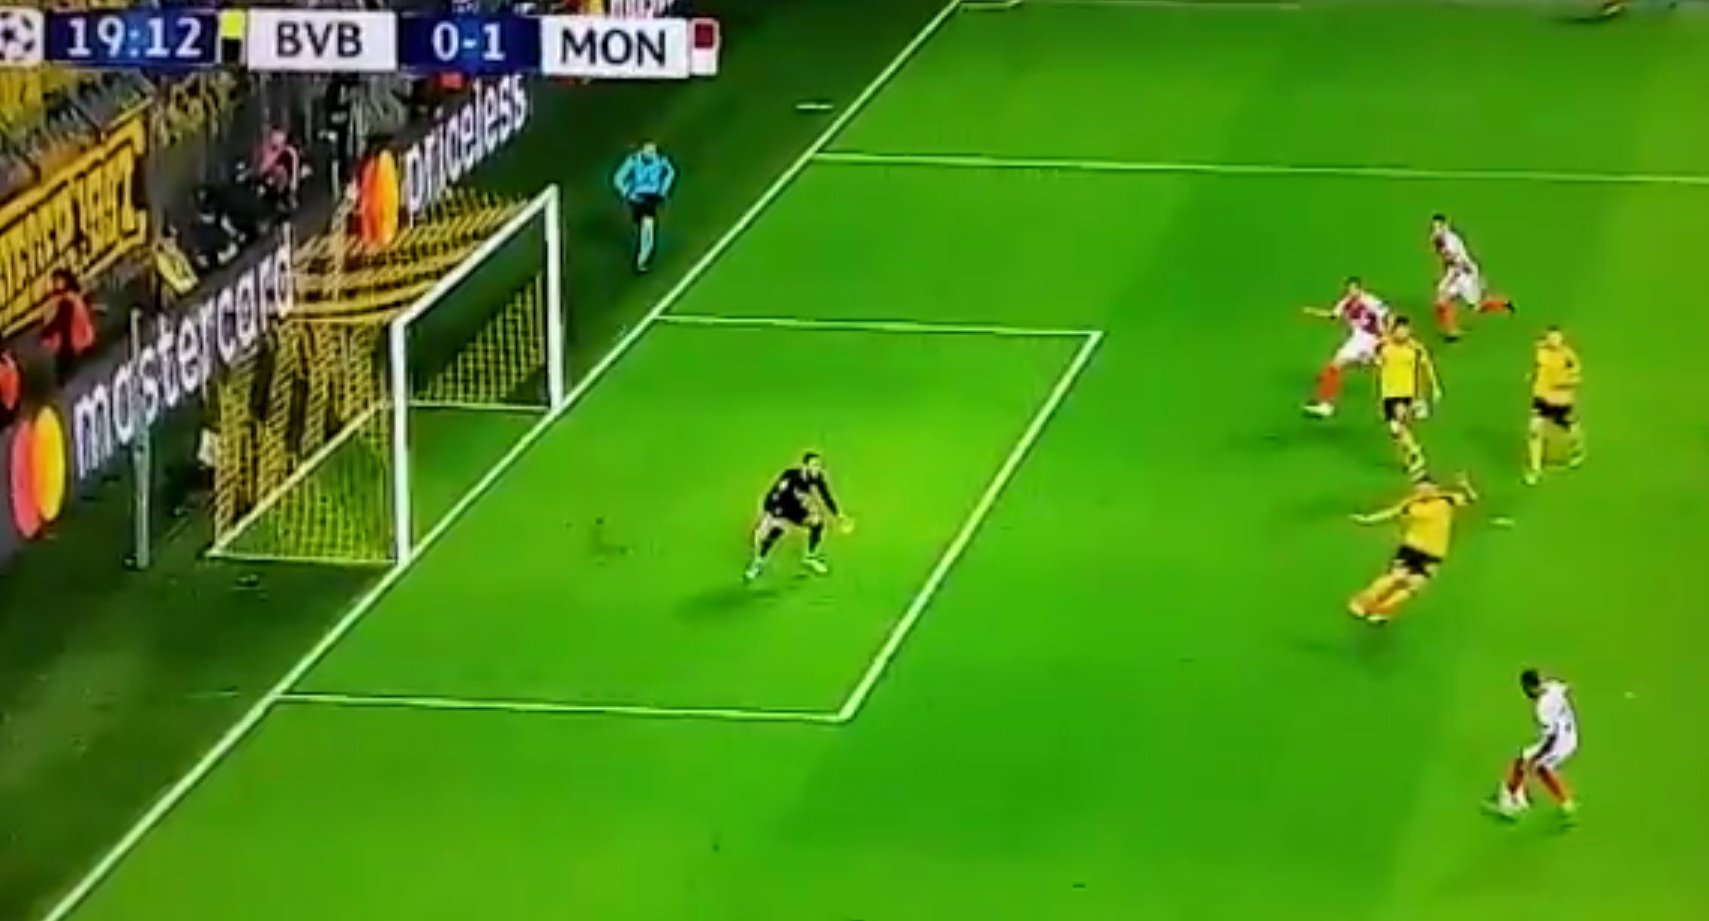 Vidéo : Mbappé ouvre le score face à Dortmund... mais il était hors-jeu